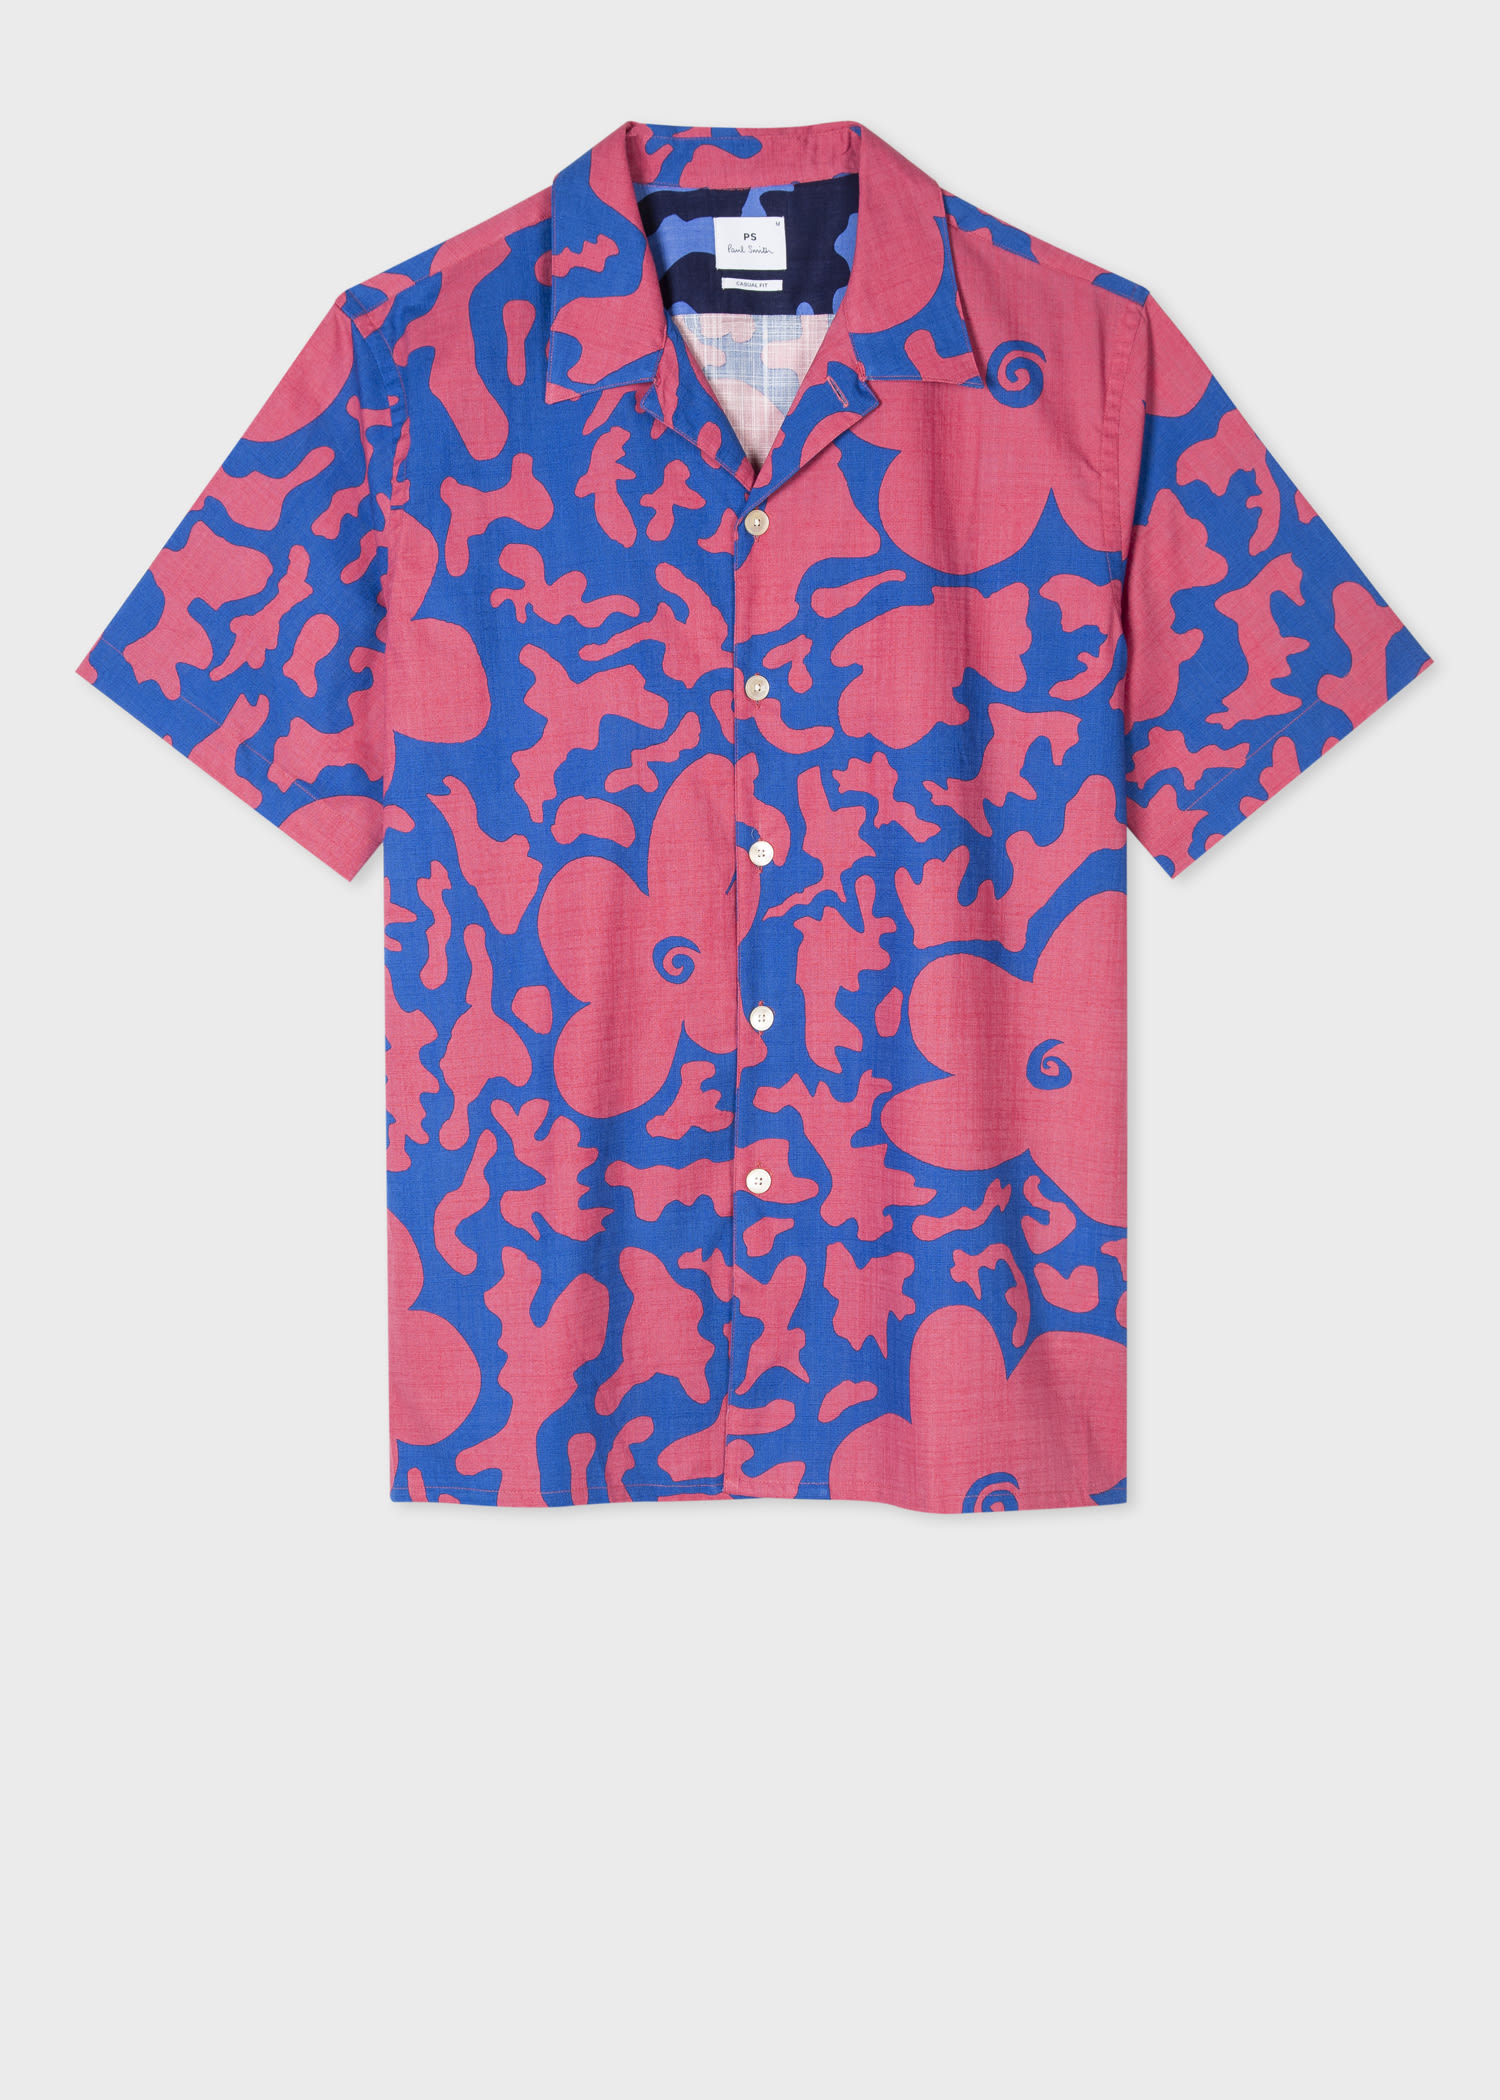 Designer Shirts For Men - Paul Smith Australia